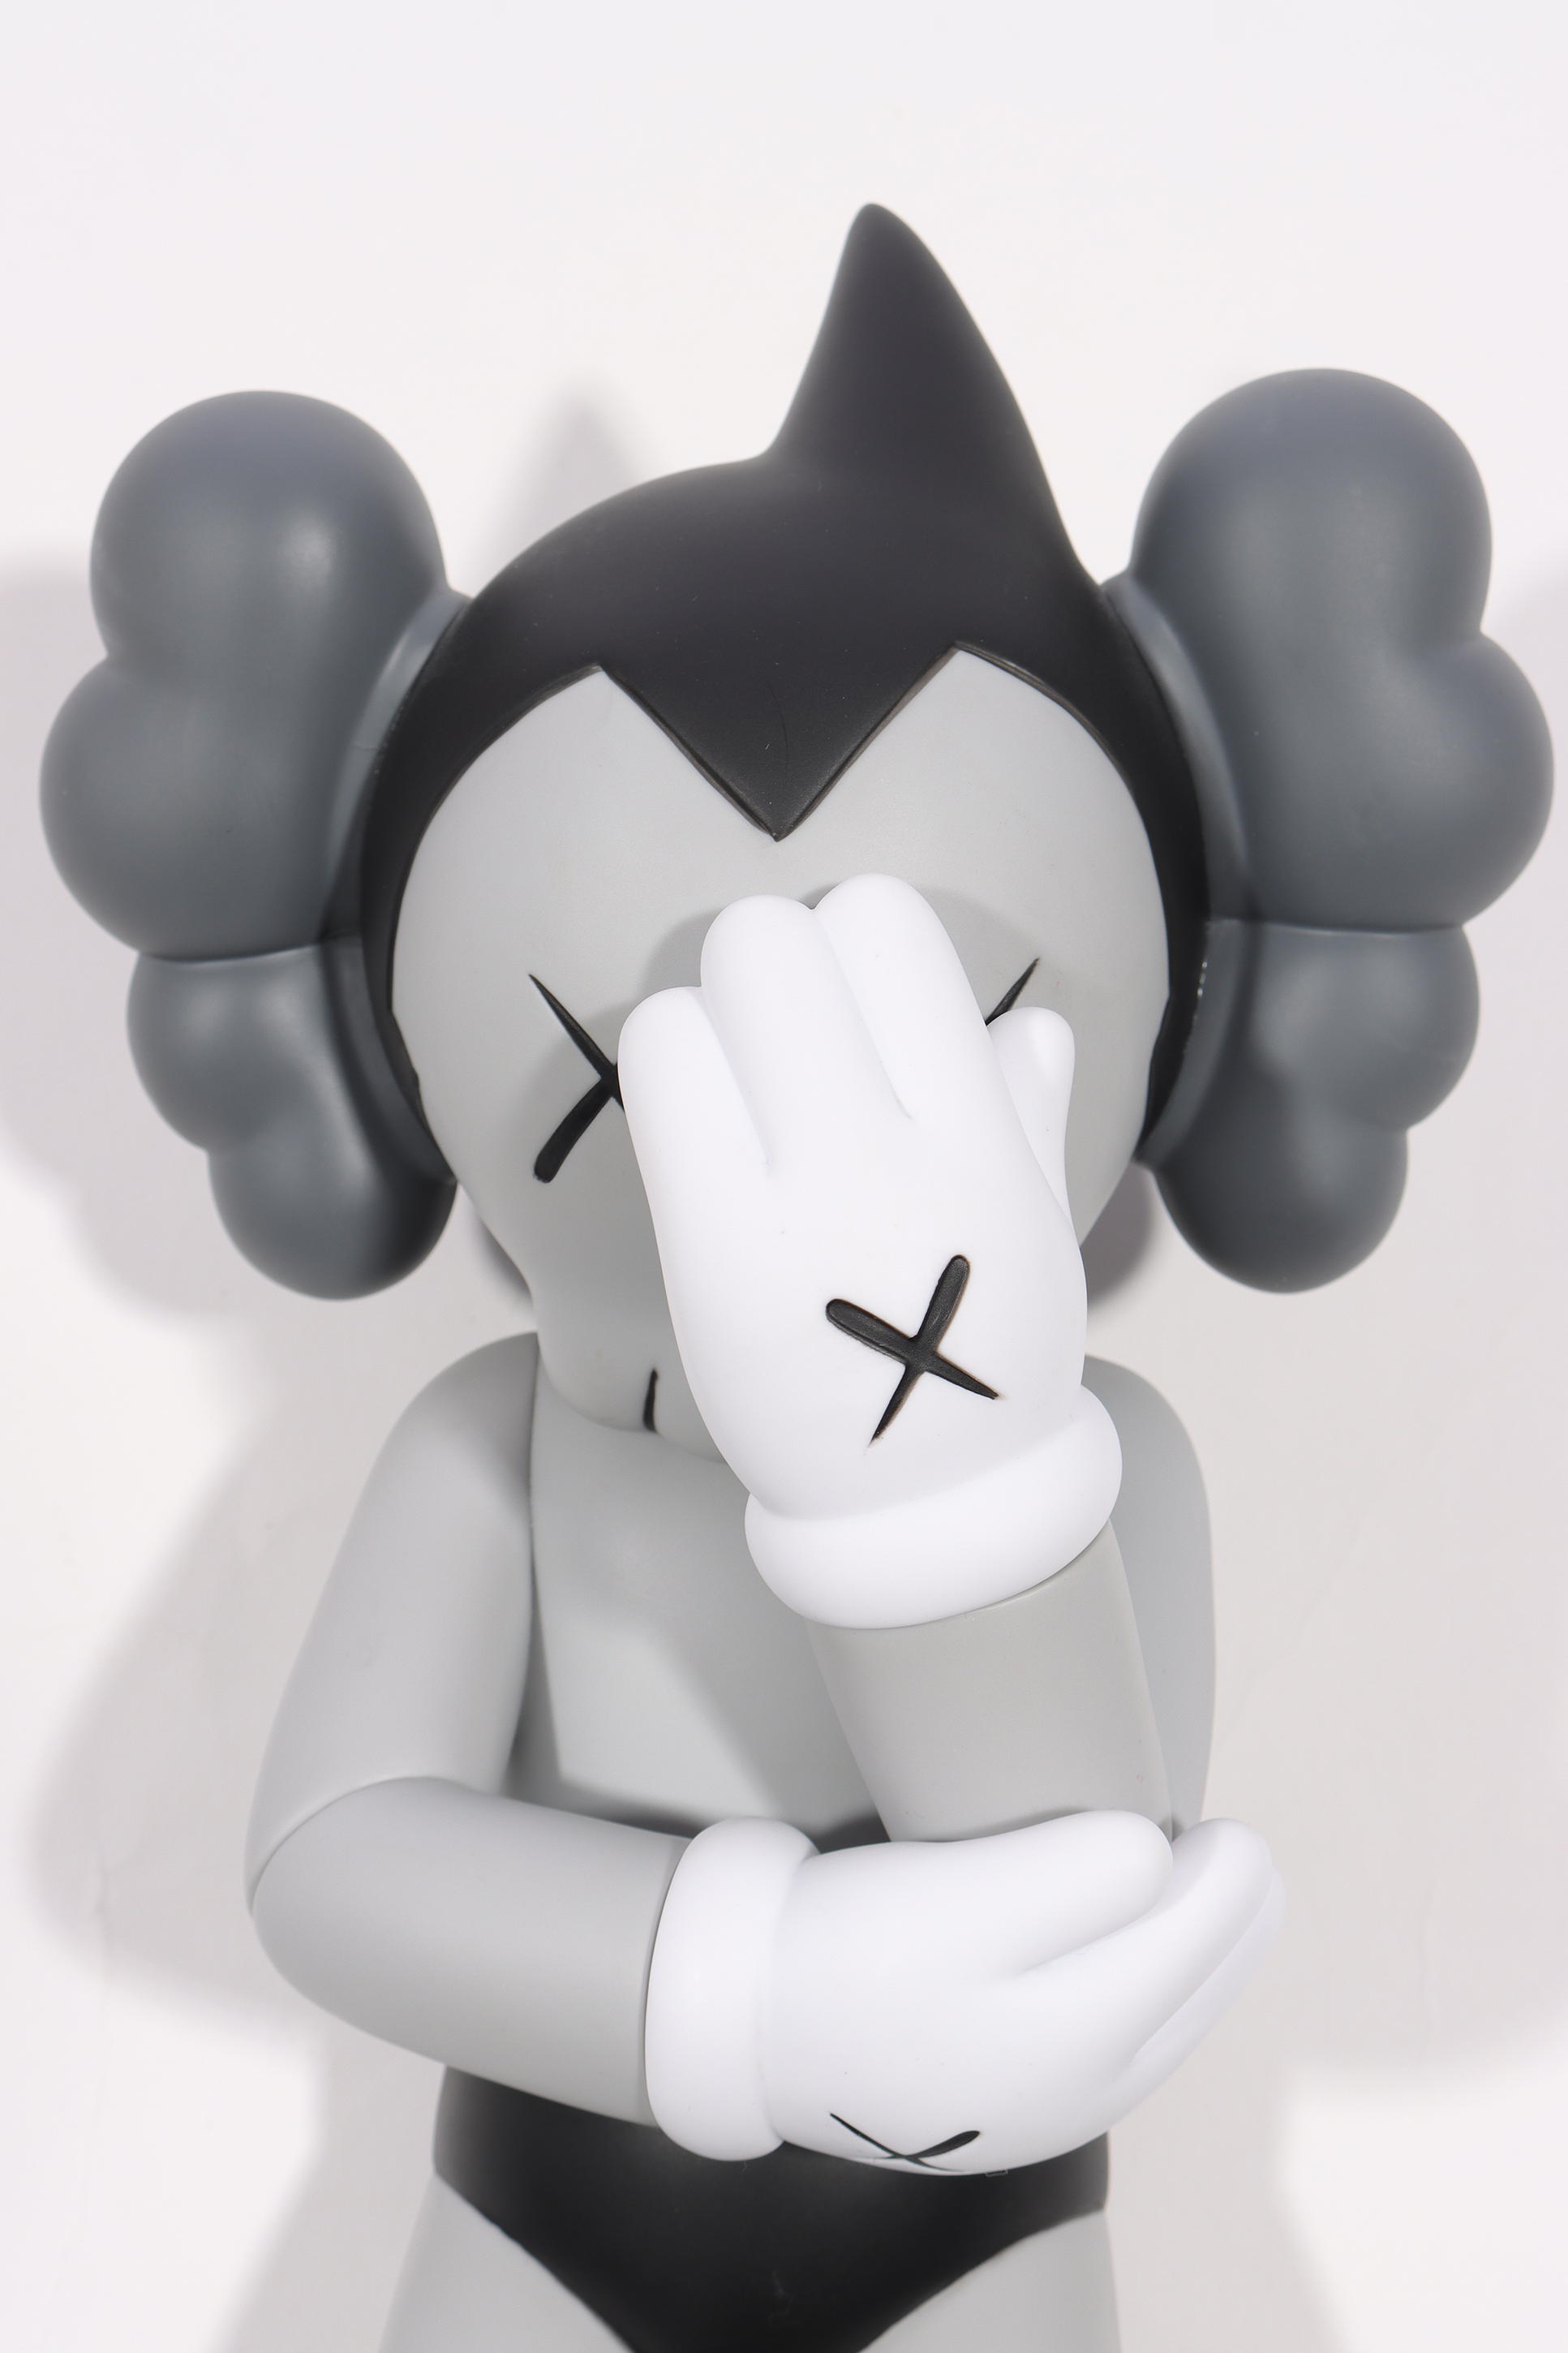 Astro Boy Vinyl Figure - Grey (2012)